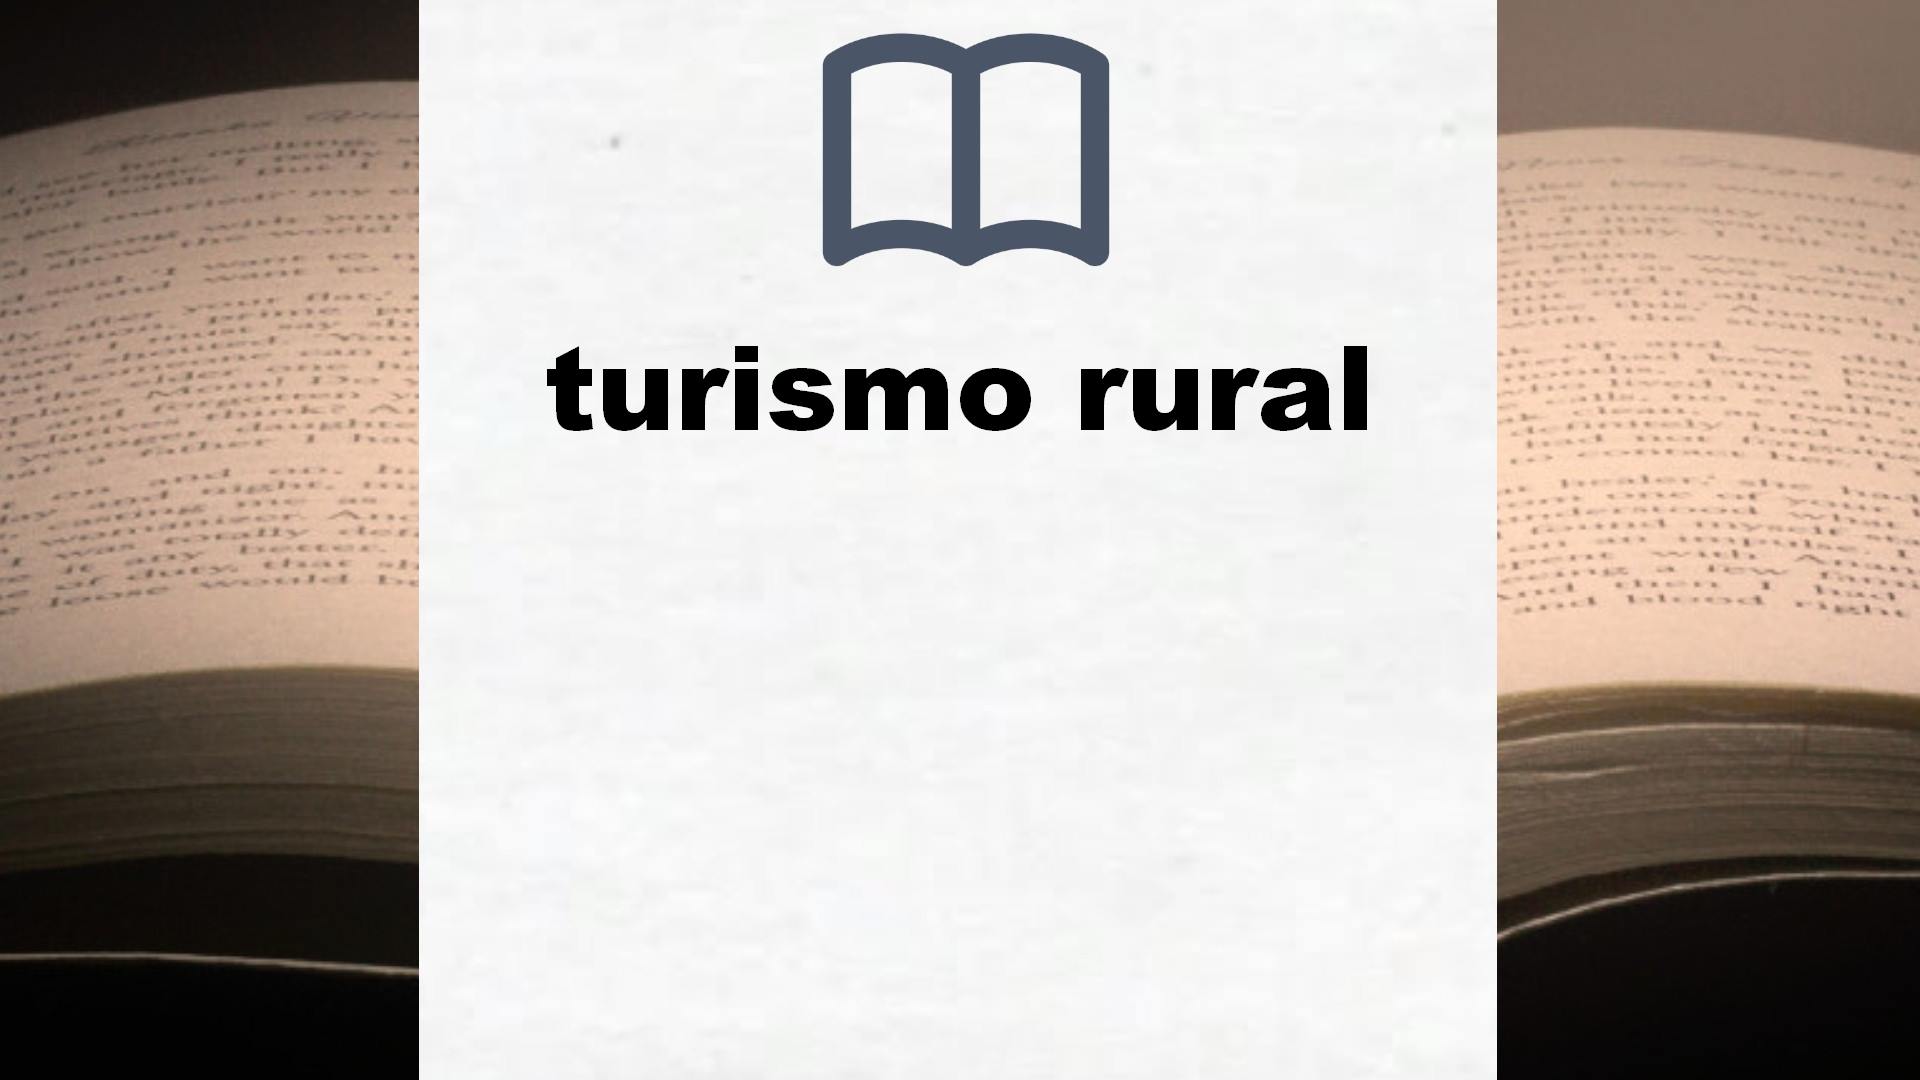 Libros sobre turismo rural